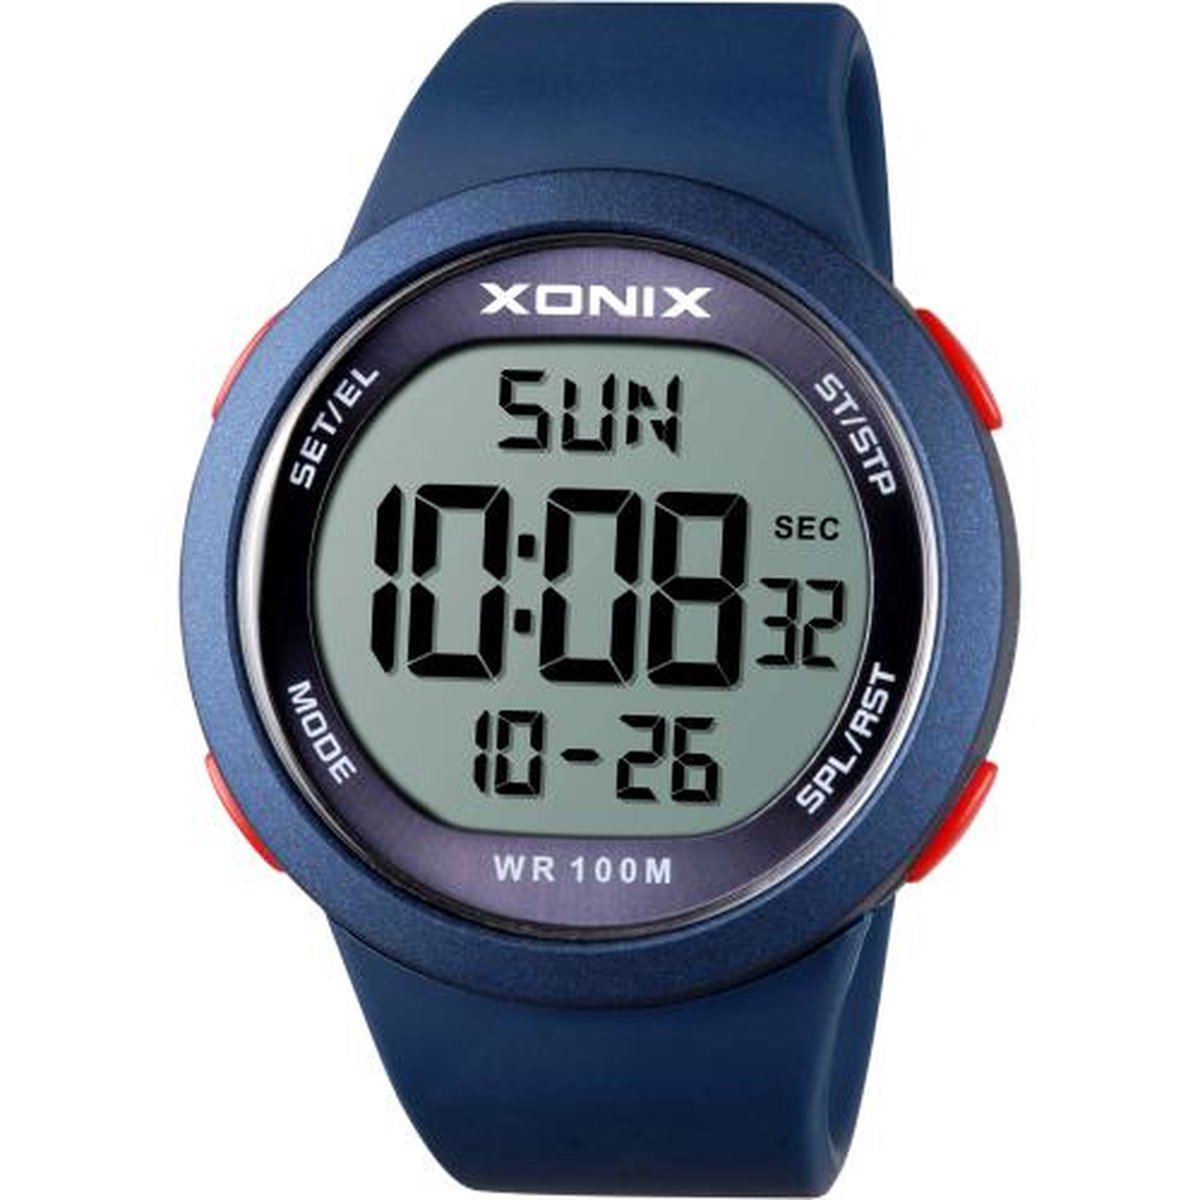 Xonix NY-A03 - Horloge - Digitaal - Heren - Mannen - Siliconen band - ABS - Cijfers - Achtergrondverlichting - Alarm - Start-Stop - Chronograaf - Tweede tijdzone - Waterdicht - 10 ATM - Donkerblauw - Rood